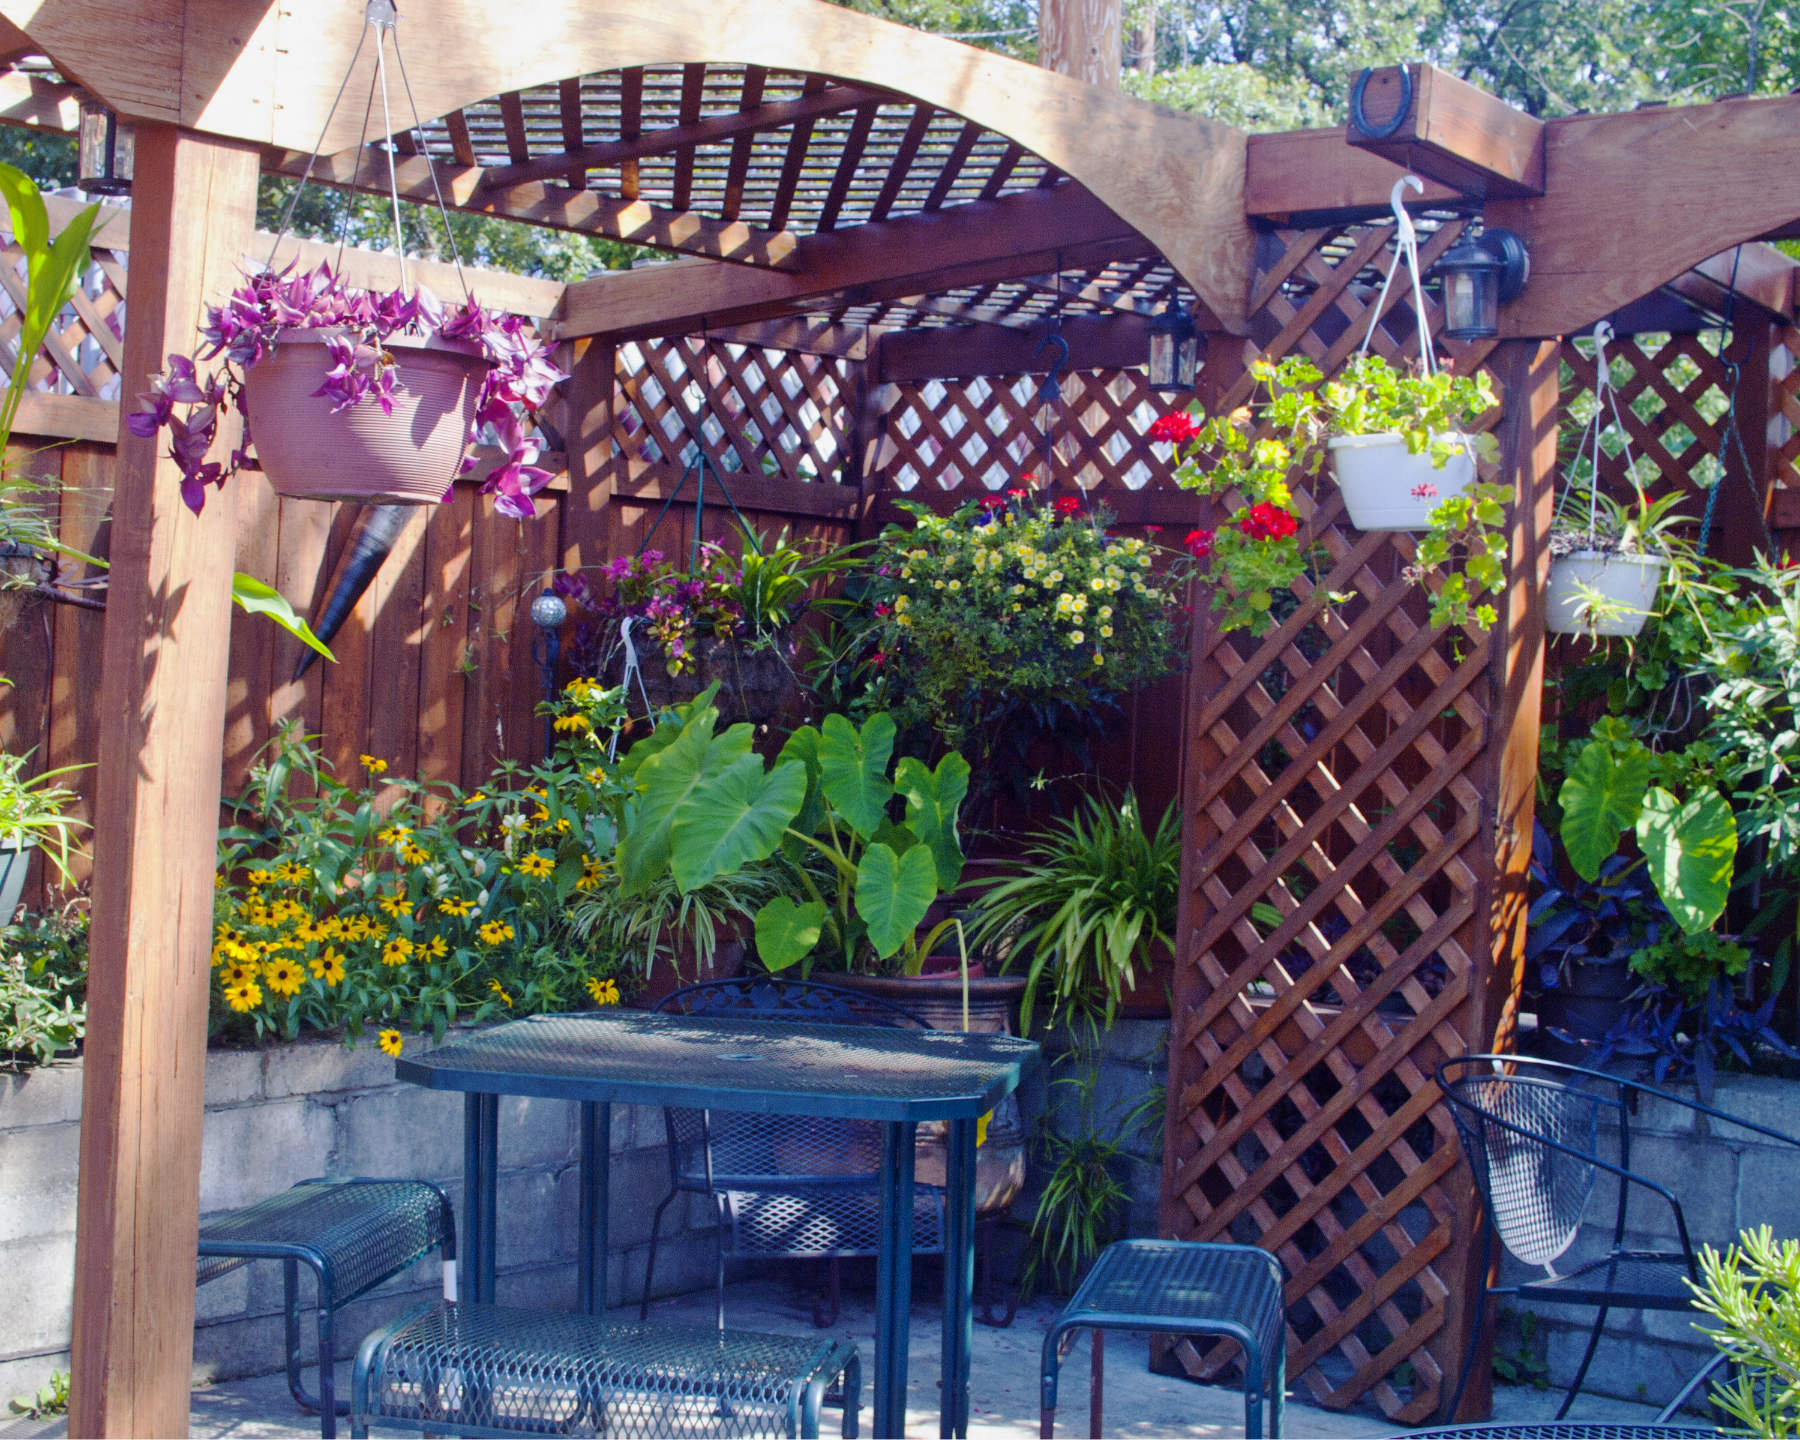 Outdoor restaurant patio with garden